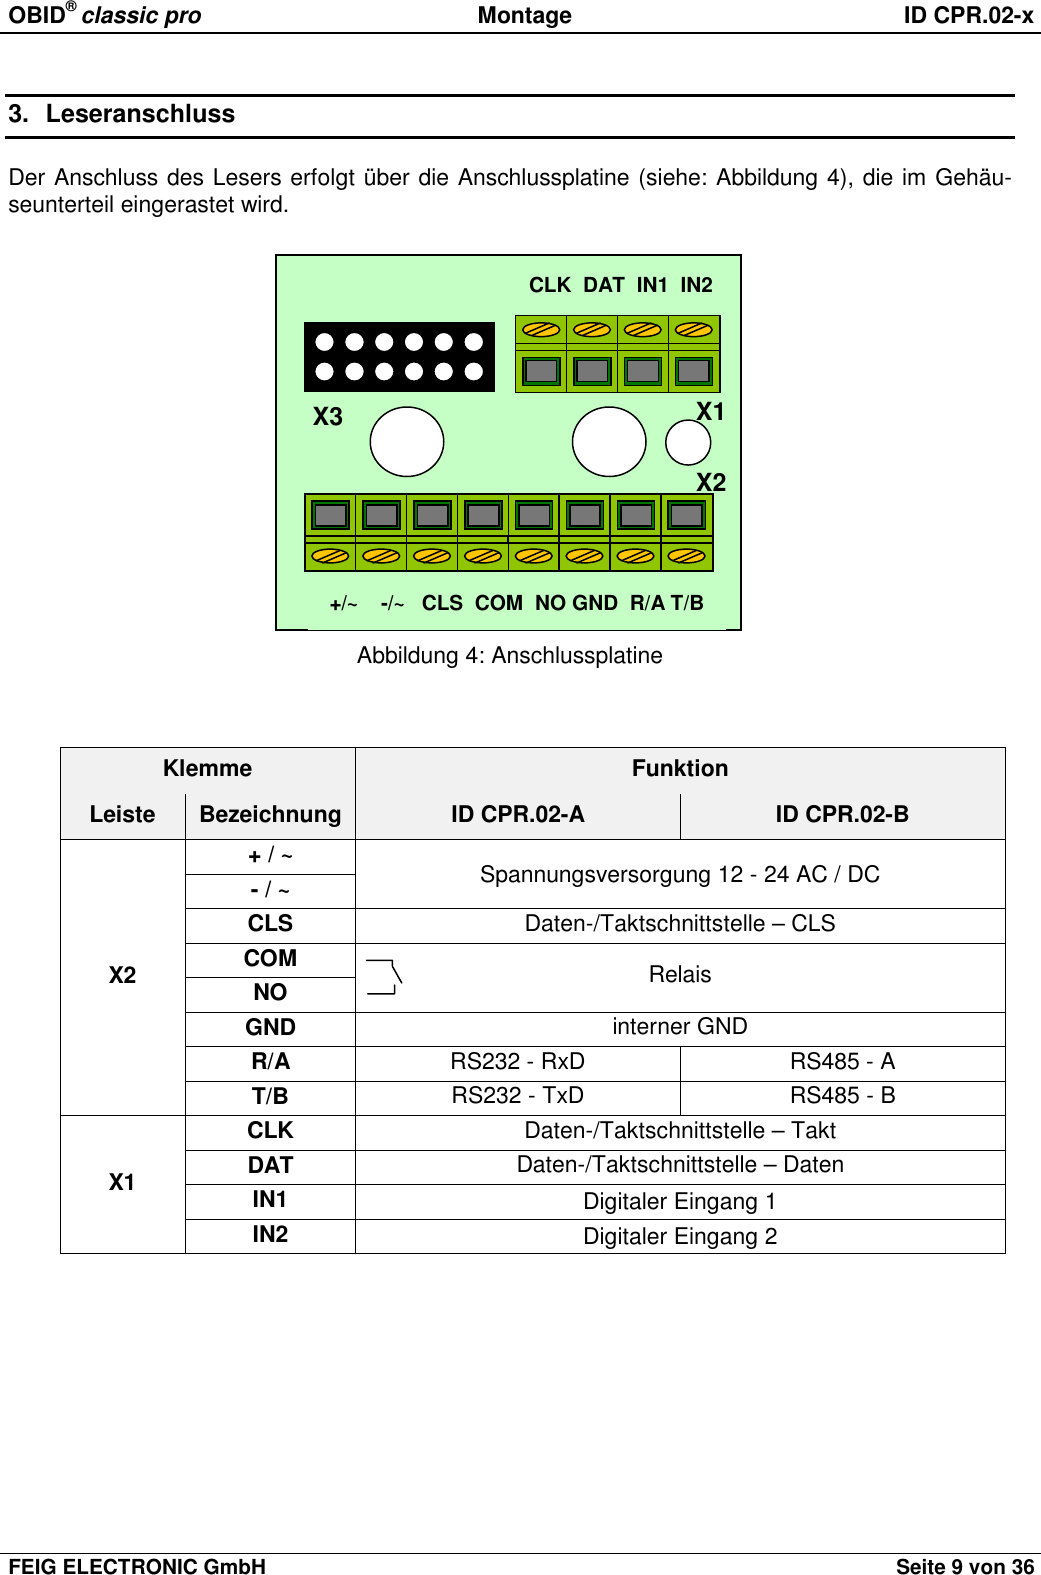 OBID® classic pro Montage ID CPR.02-xFEIG ELECTRONIC GmbH Seite 9 von 363. LeseranschlussDer Anschluss des Lesers erfolgt über die Anschlussplatine (siehe: Abbildung 4), die im Gehäu-seunterteil eingerastet wird.Abbildung 4: AnschlussplatineKlemme FunktionLeiste Bezeichnung ID CPR.02-A ID CPR.02-B+ / ~- / ~Spannungsversorgung 12 - 24 AC / DCCLS Daten-/Taktschnittstelle – CLSCOMNO RelaisGND interner GNDR/A RS232 - RxD RS485 - AX2T/B RS232 - TxD RS485 - BCLK Daten-/Taktschnittstelle – TaktDAT Daten-/Taktschnittstelle – DatenIN1 Digitaler Eingang 1X1IN2 Digitaler Eingang 2CLK  DAT  IN1  IN2+/~    -/~   CLS  COM  NO GND  R/A T/BX1X2X3